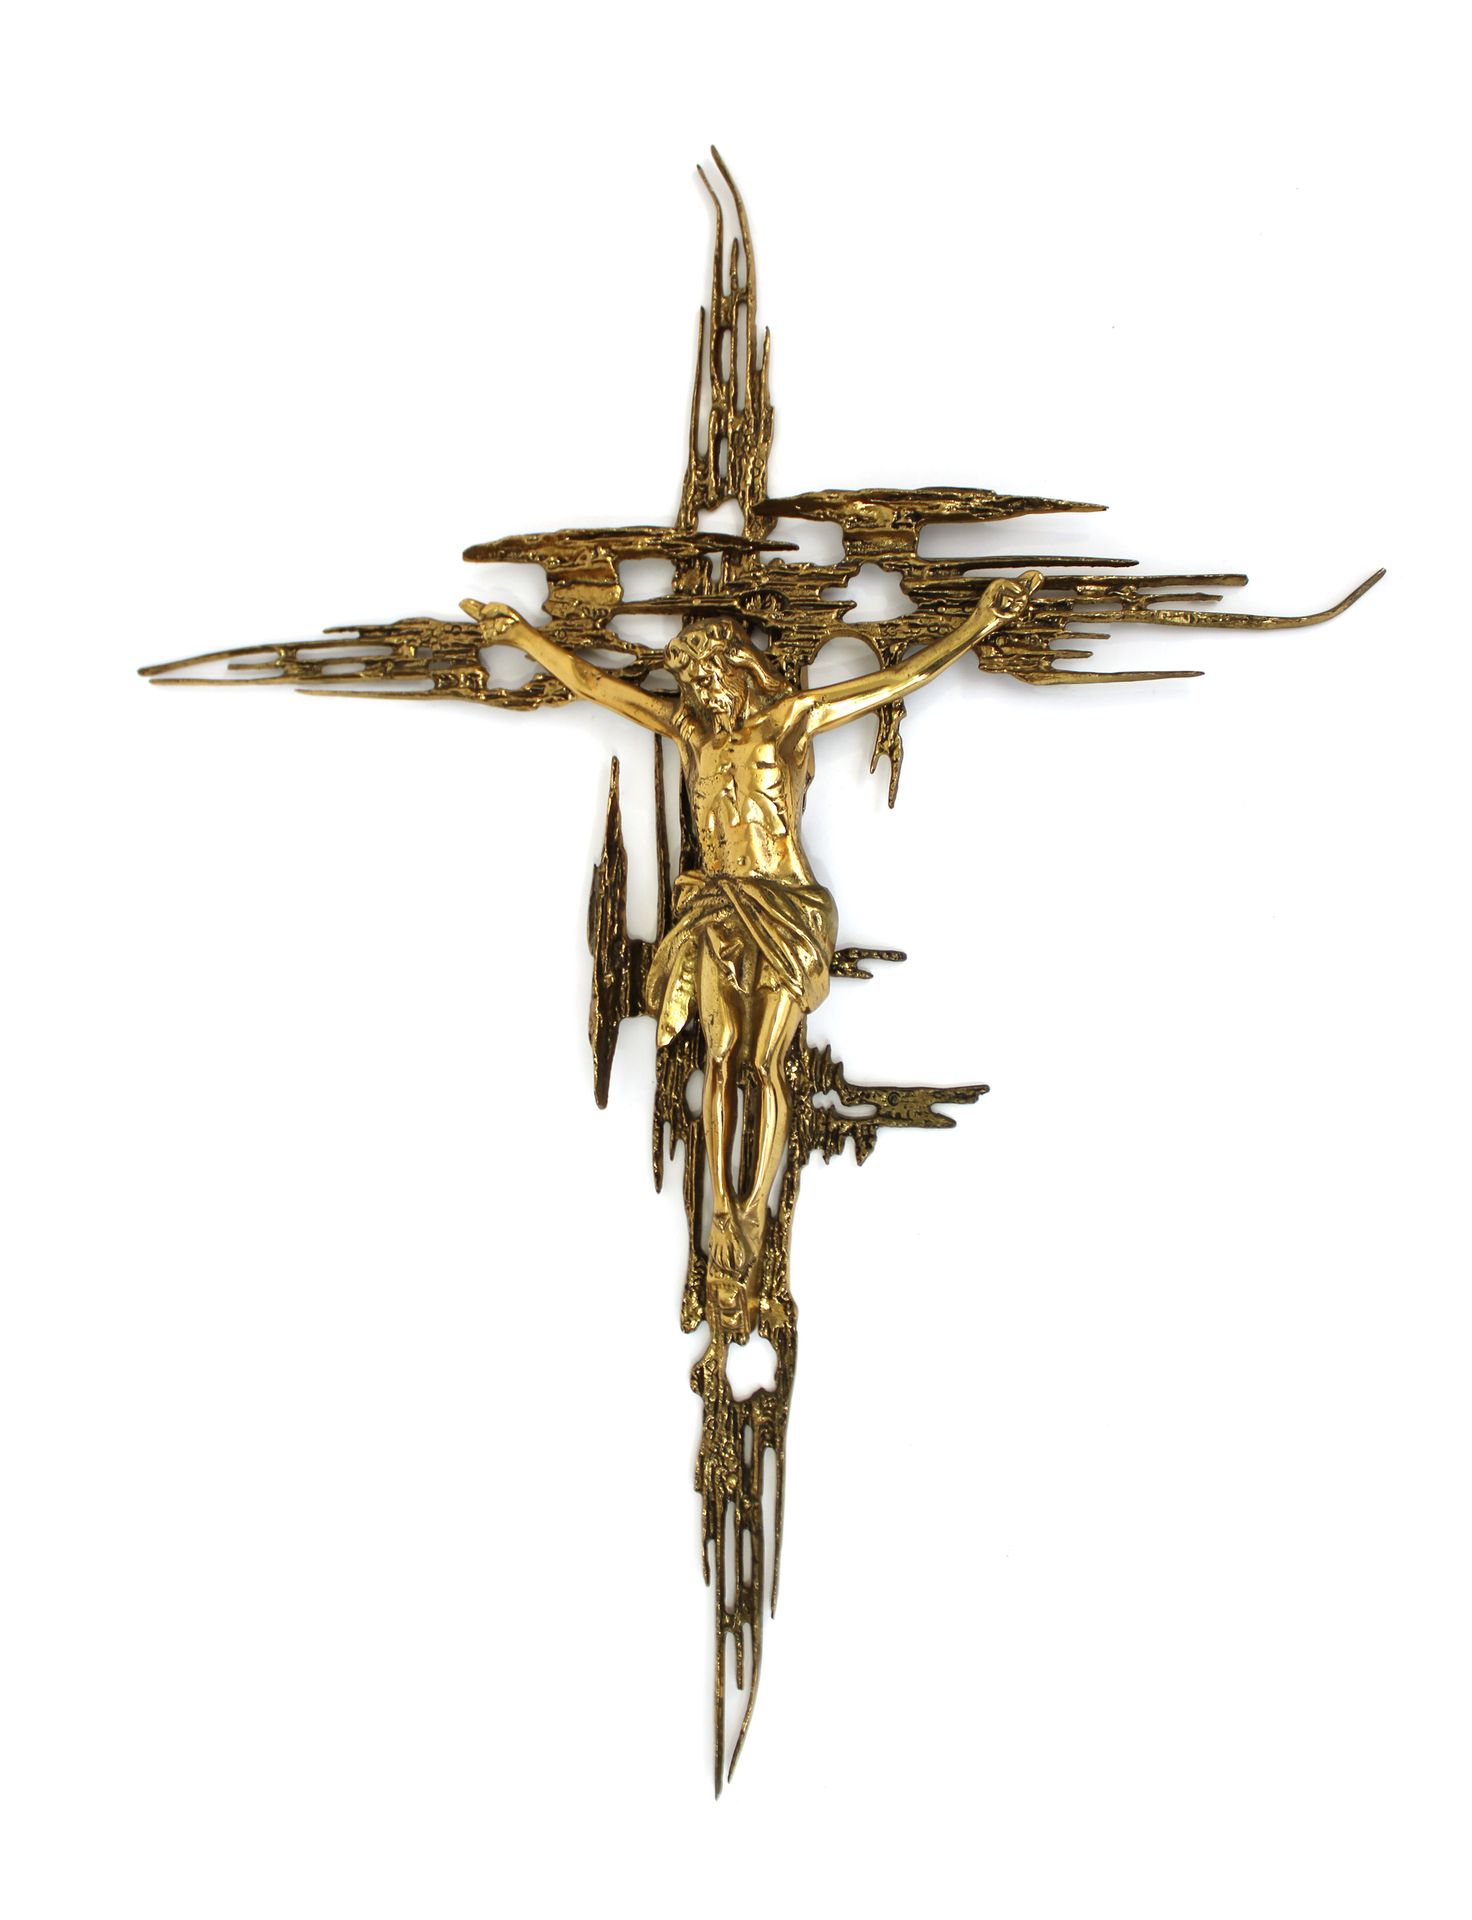 Null Dopo Salvador DALI
Crocifisso in bronzo dorato
77 x 60 cm